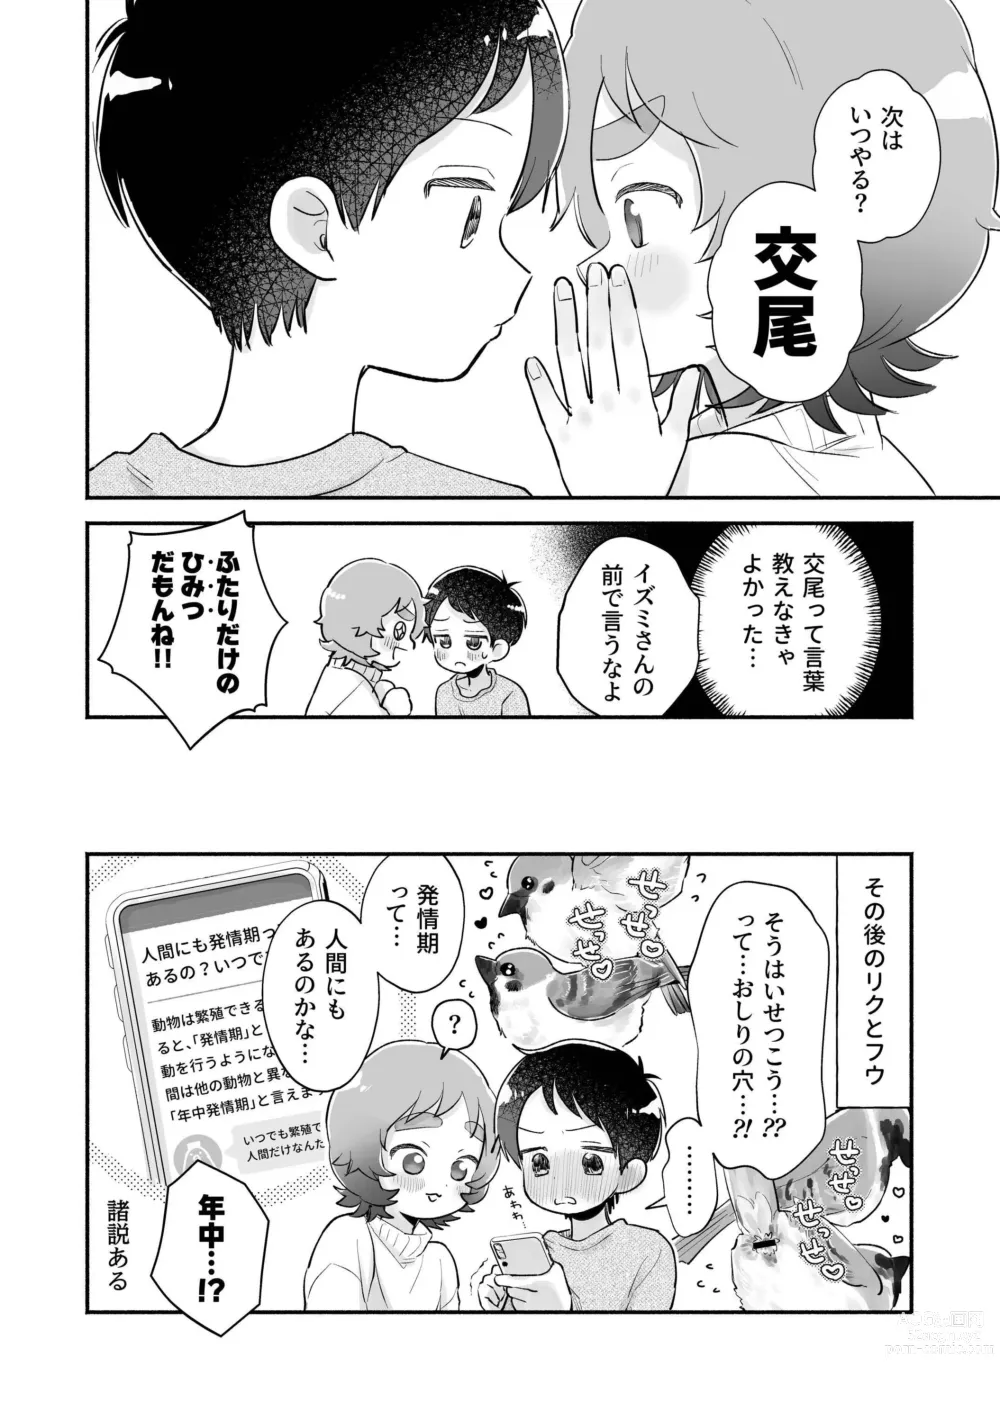 Page 50 of doujinshi Riku to Fuu Akachan Dekireba Kazoku ni Nareru no ka na